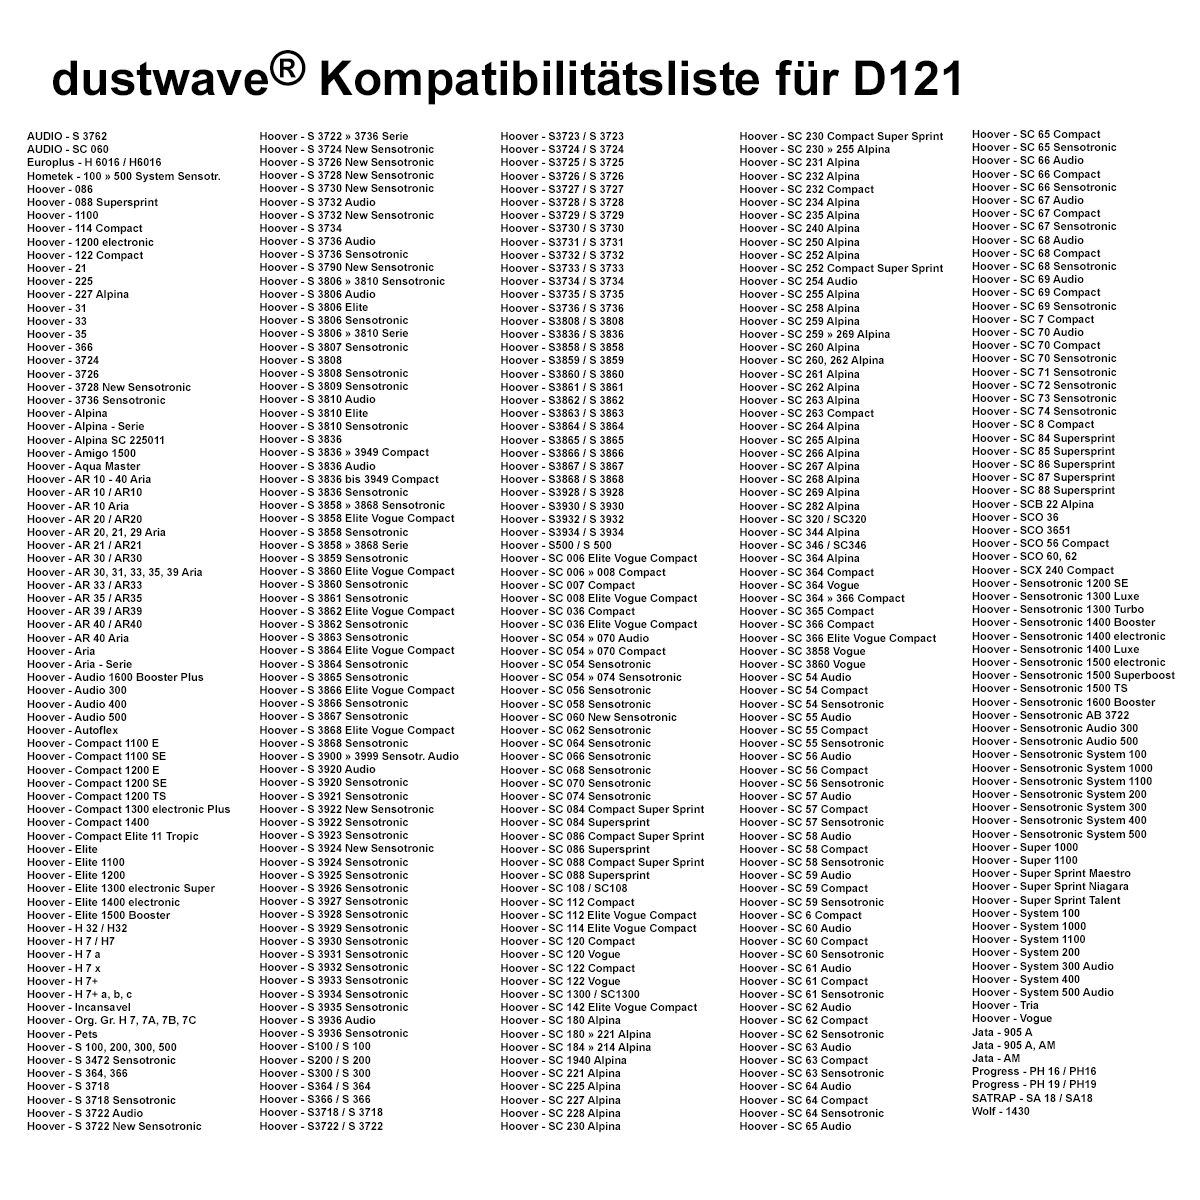 Dustwave® 10 Staubsaugerbeutel für Hoover S3836 / S 3836 Sensotronic / Audio / Compact - hocheffizient, mehrlagiges Mikrovlies mit Hygieneverschluss - Made in Germany